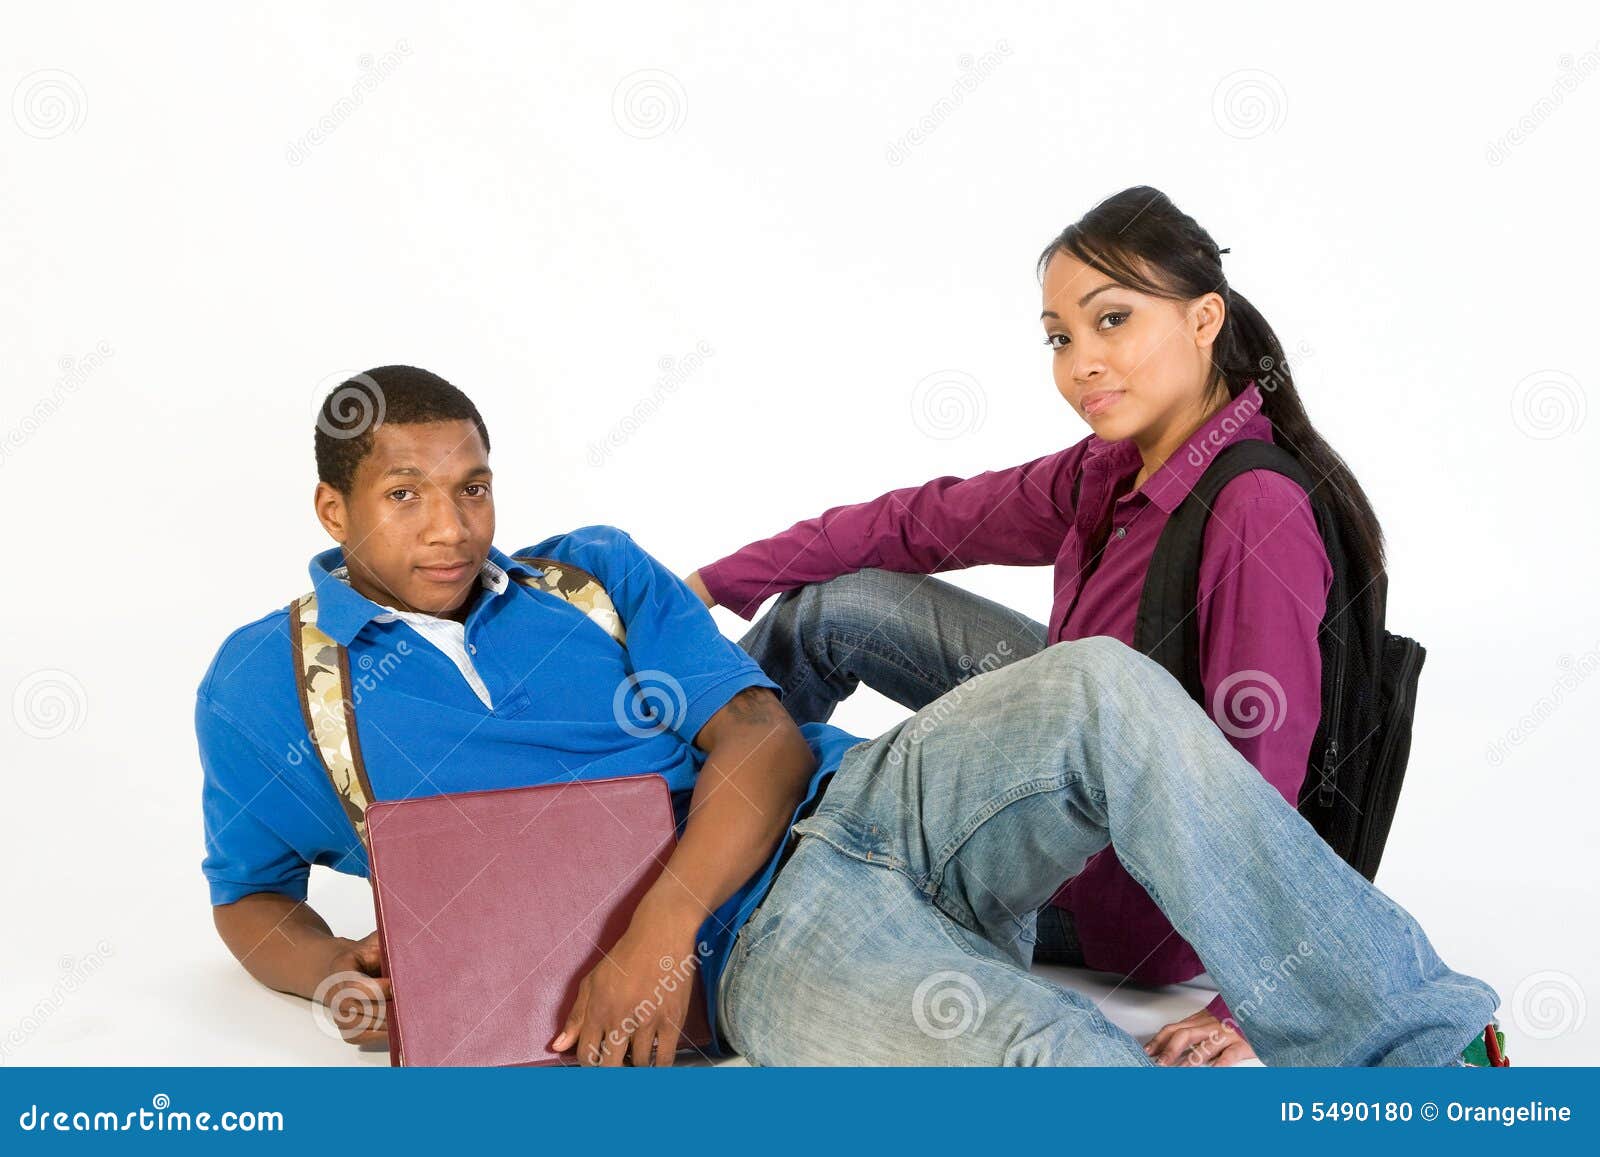 studious teen couple